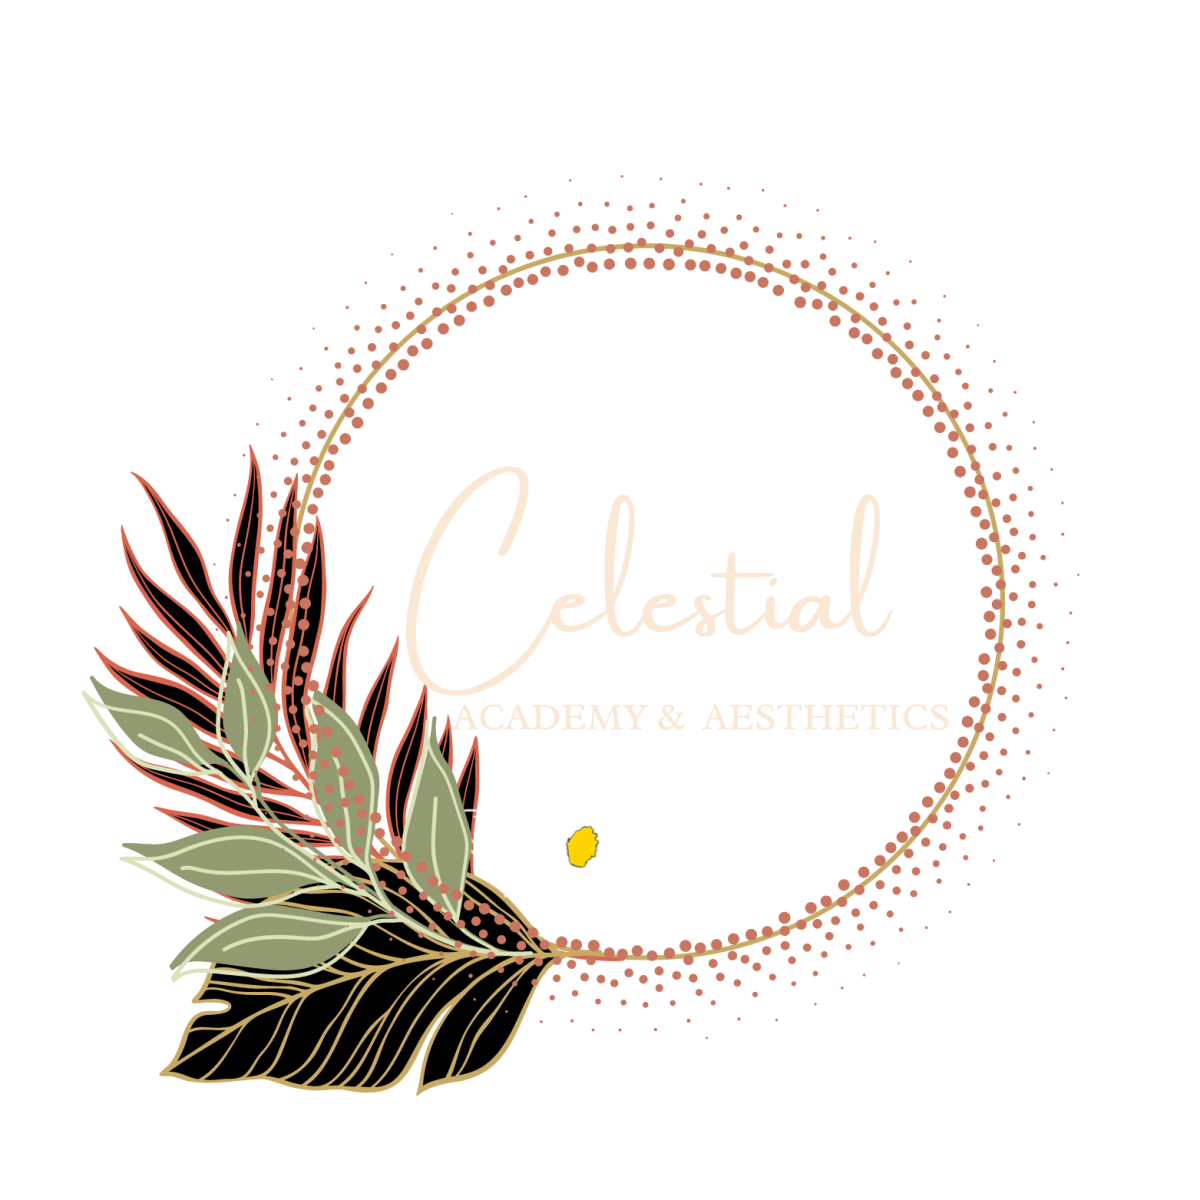 Celestial Academy & Aesthetics